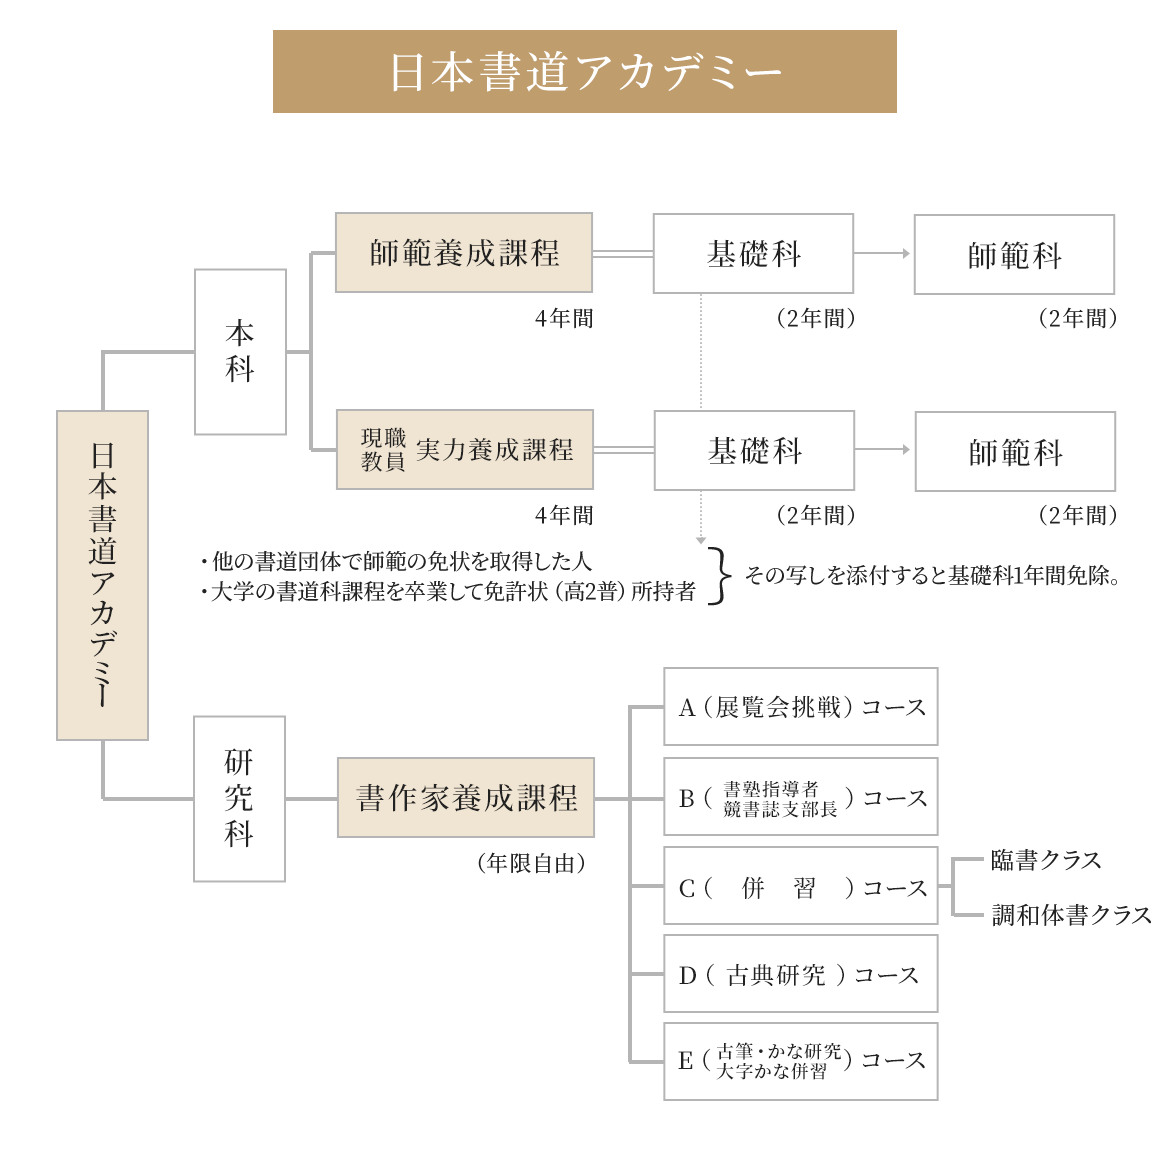 図： 日本書道アカデミー概要